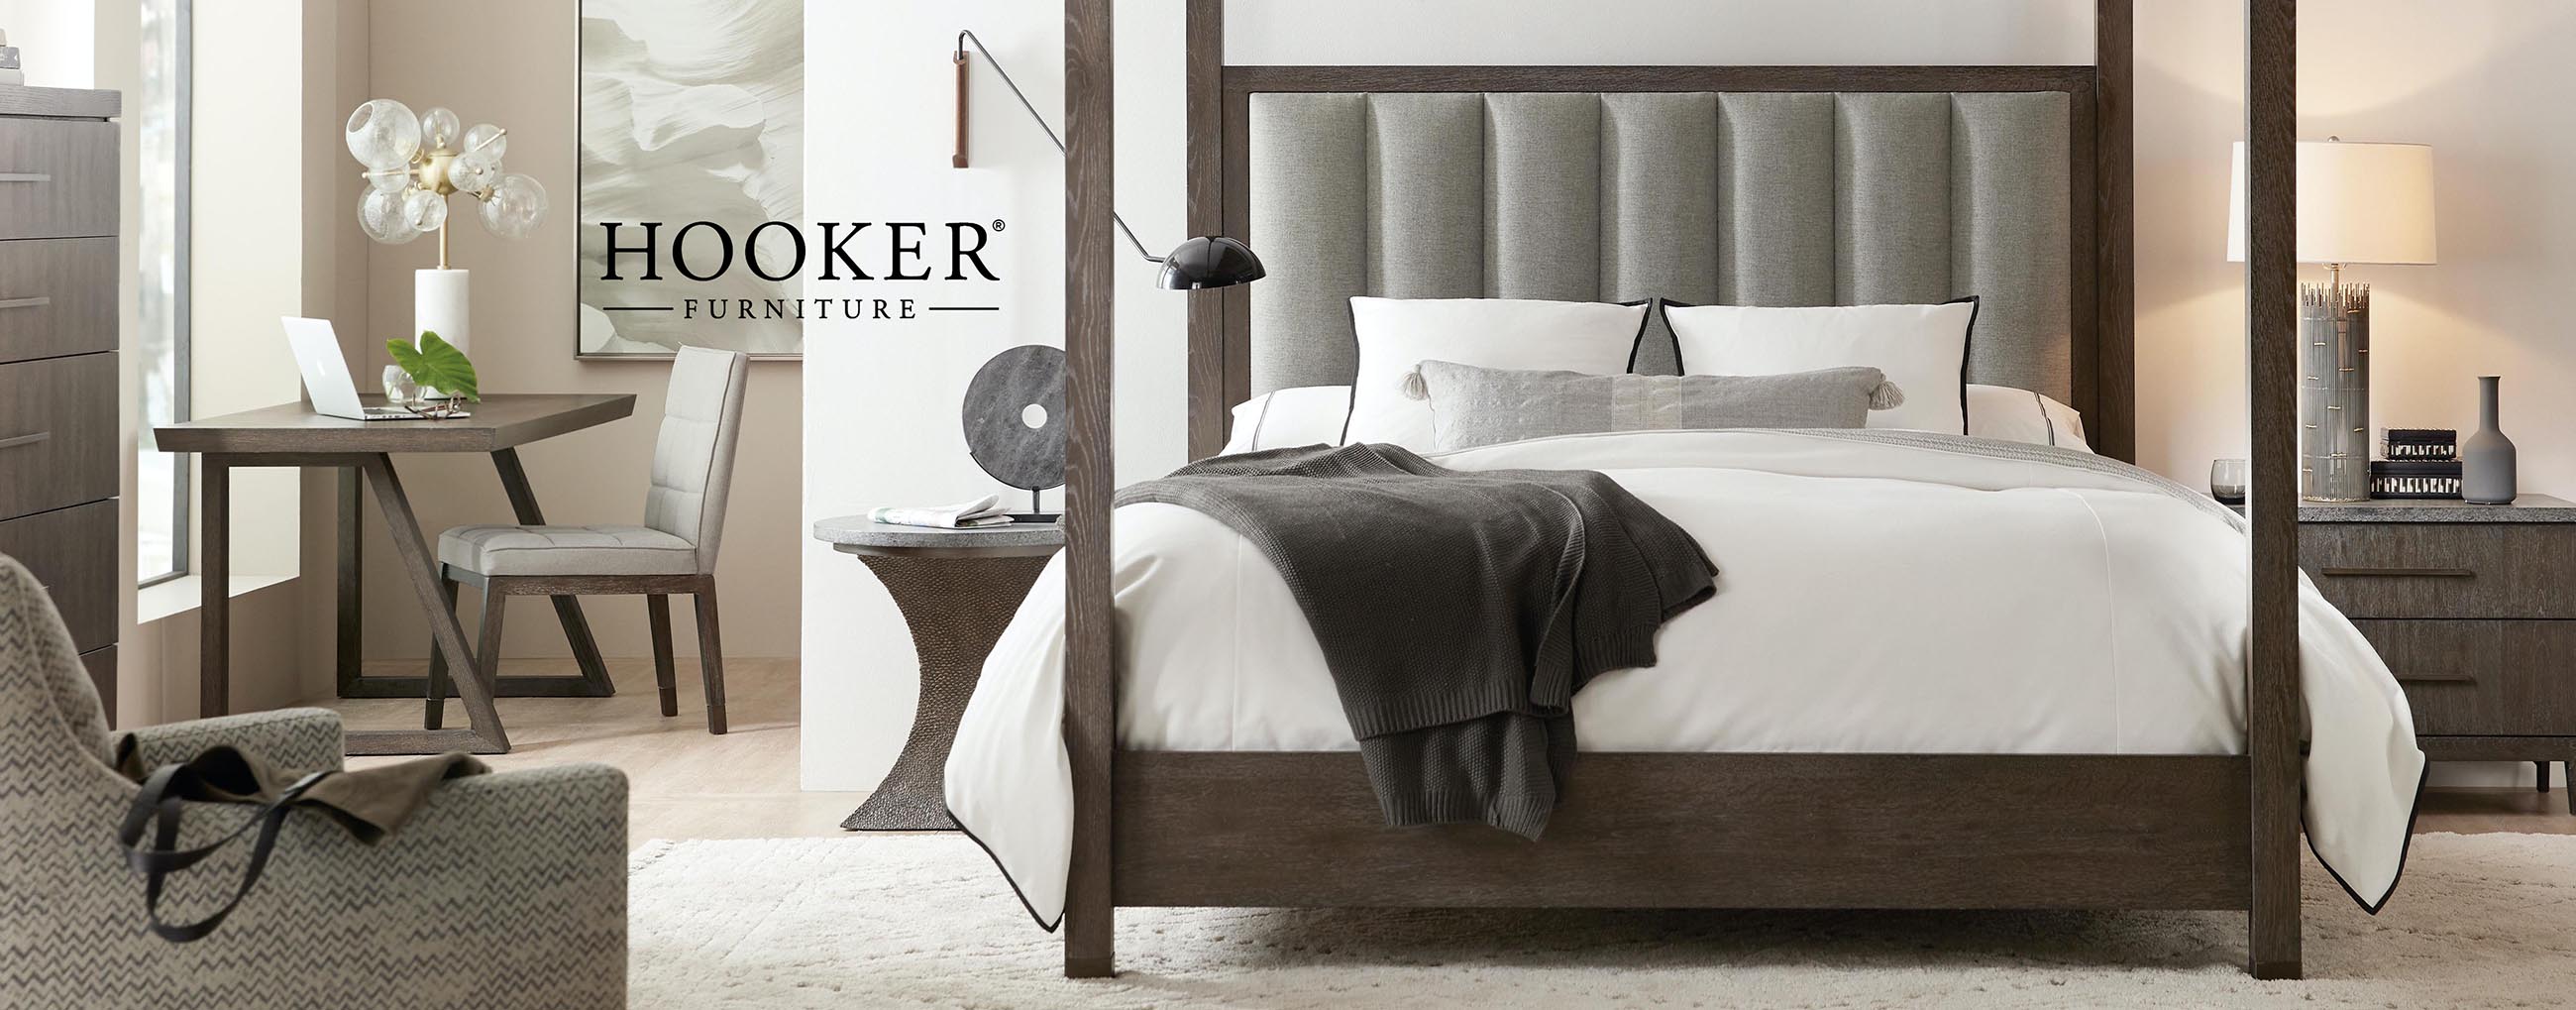 Shop Homethreads for Hooker Furniture